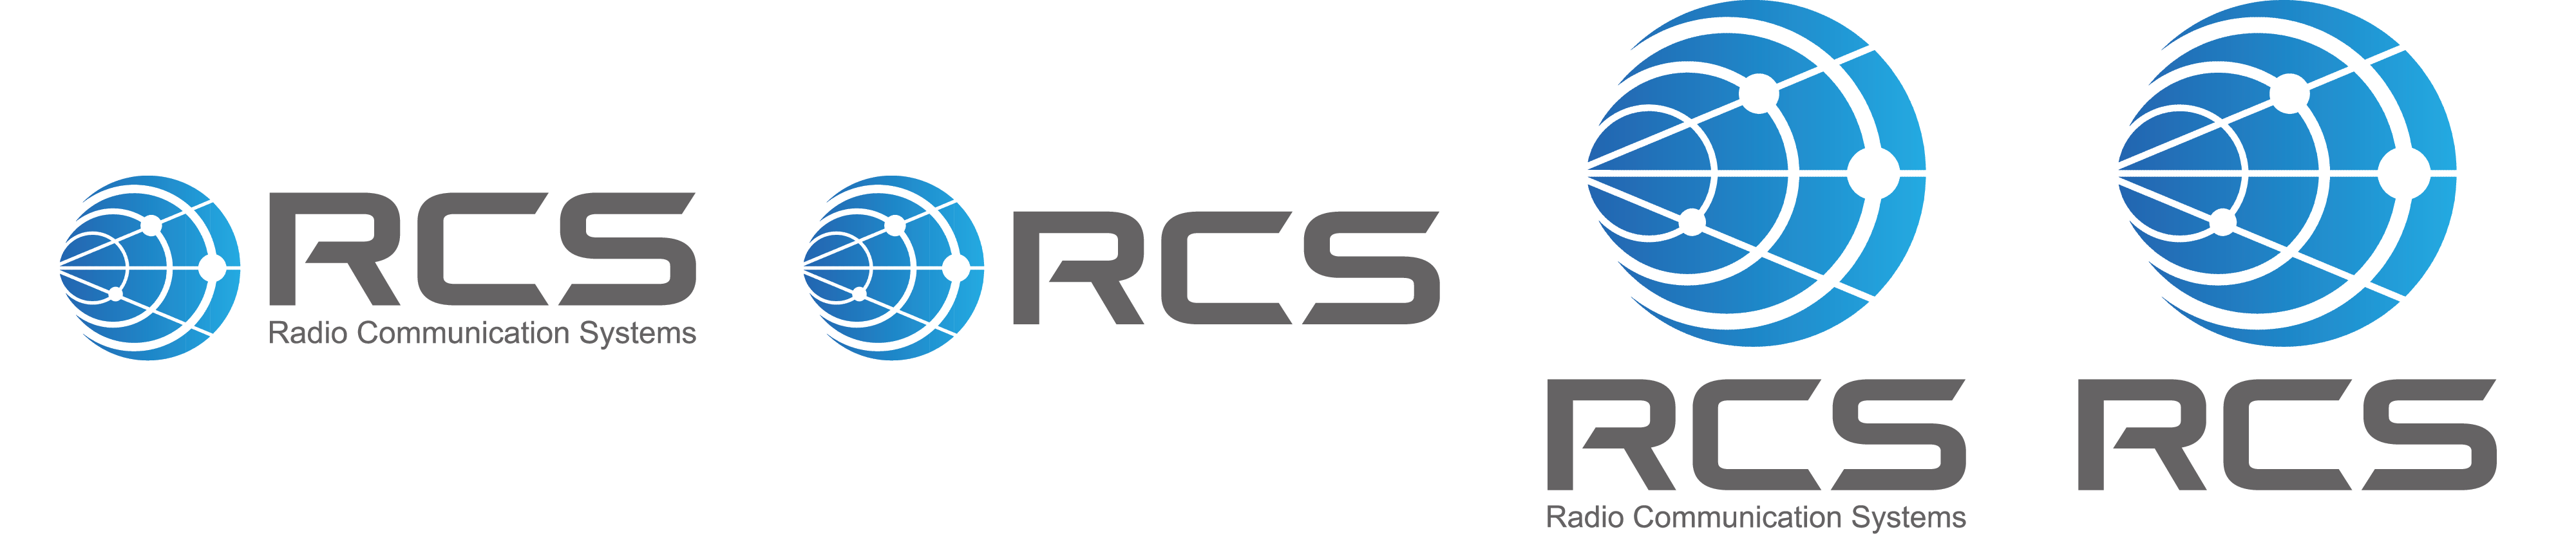 ロゴマーク使用規定 Rcs 無線通信システム研究会